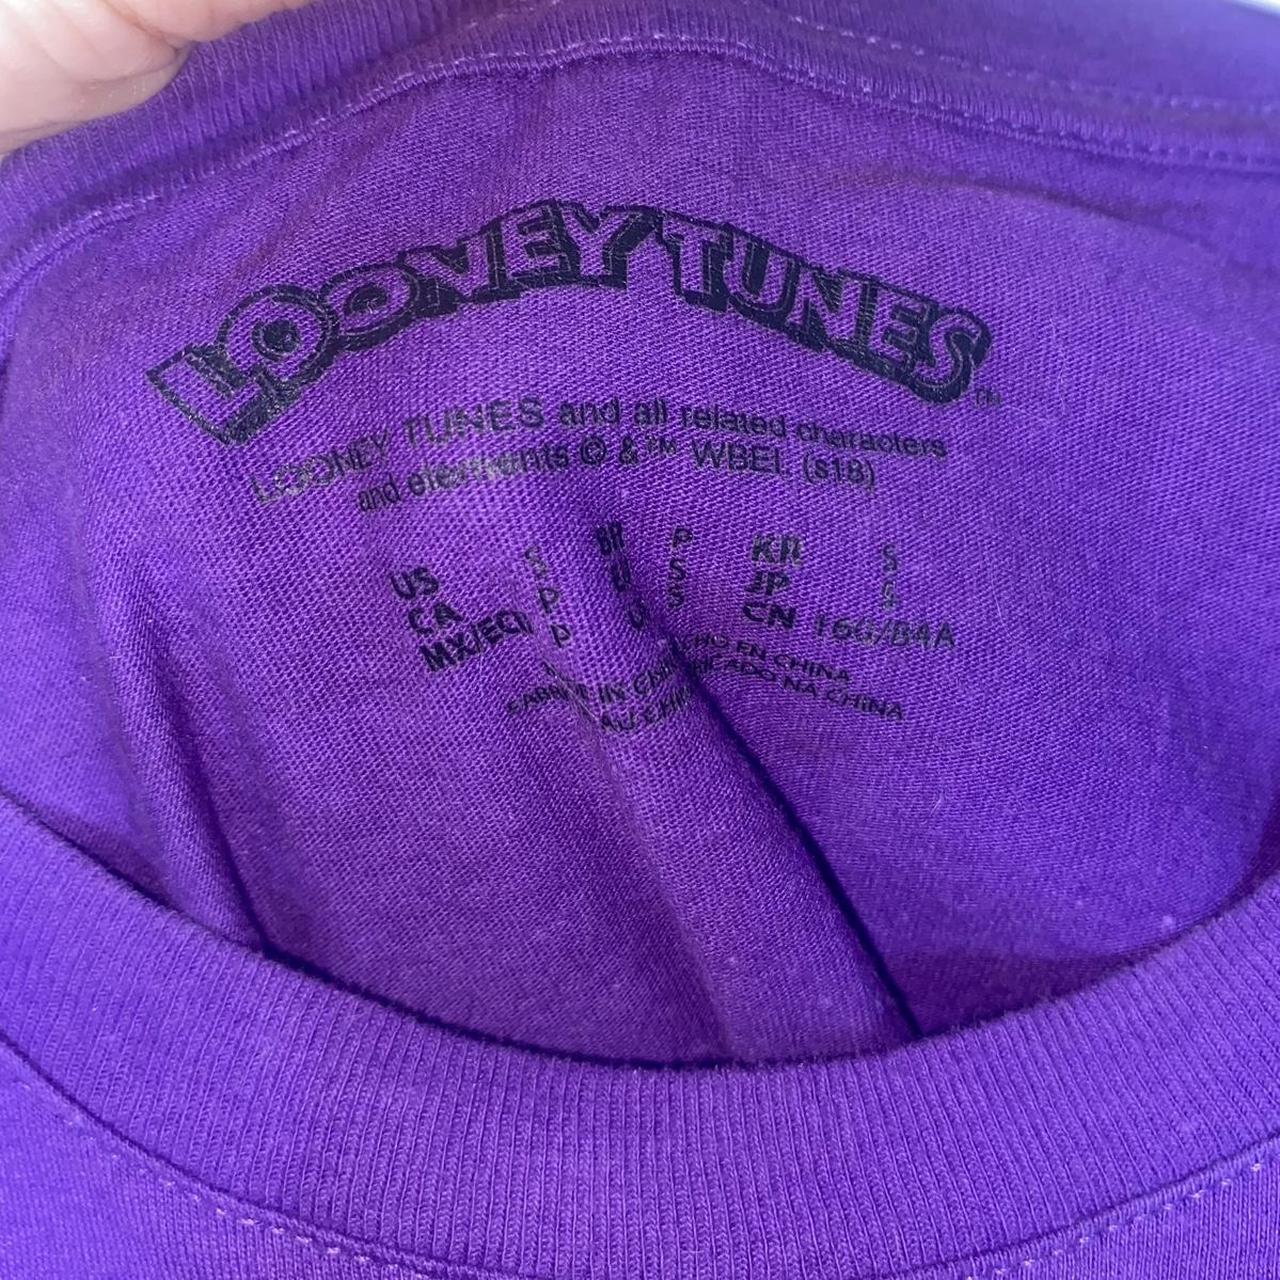 Purple Looney Toons Graphic Tee Super cute... - Depop